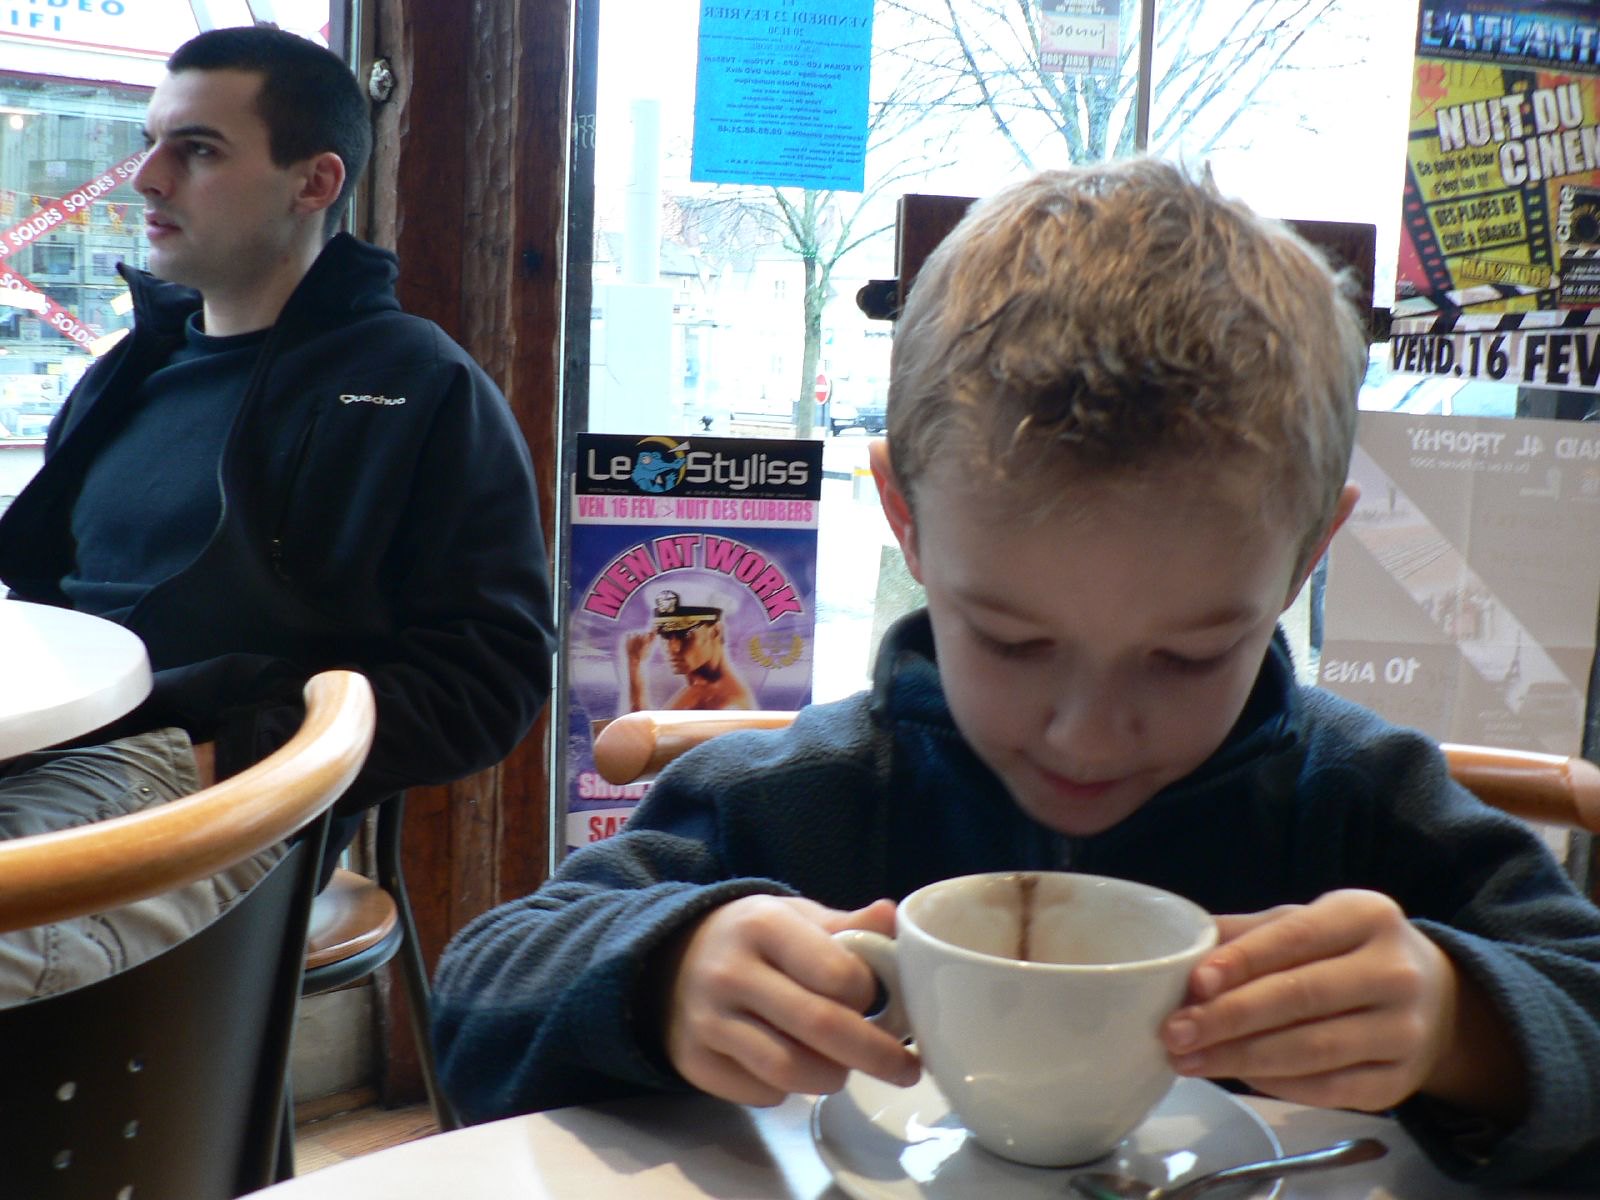 Un petit garçon qui prend un café dans un restaurant | Source : Flickr